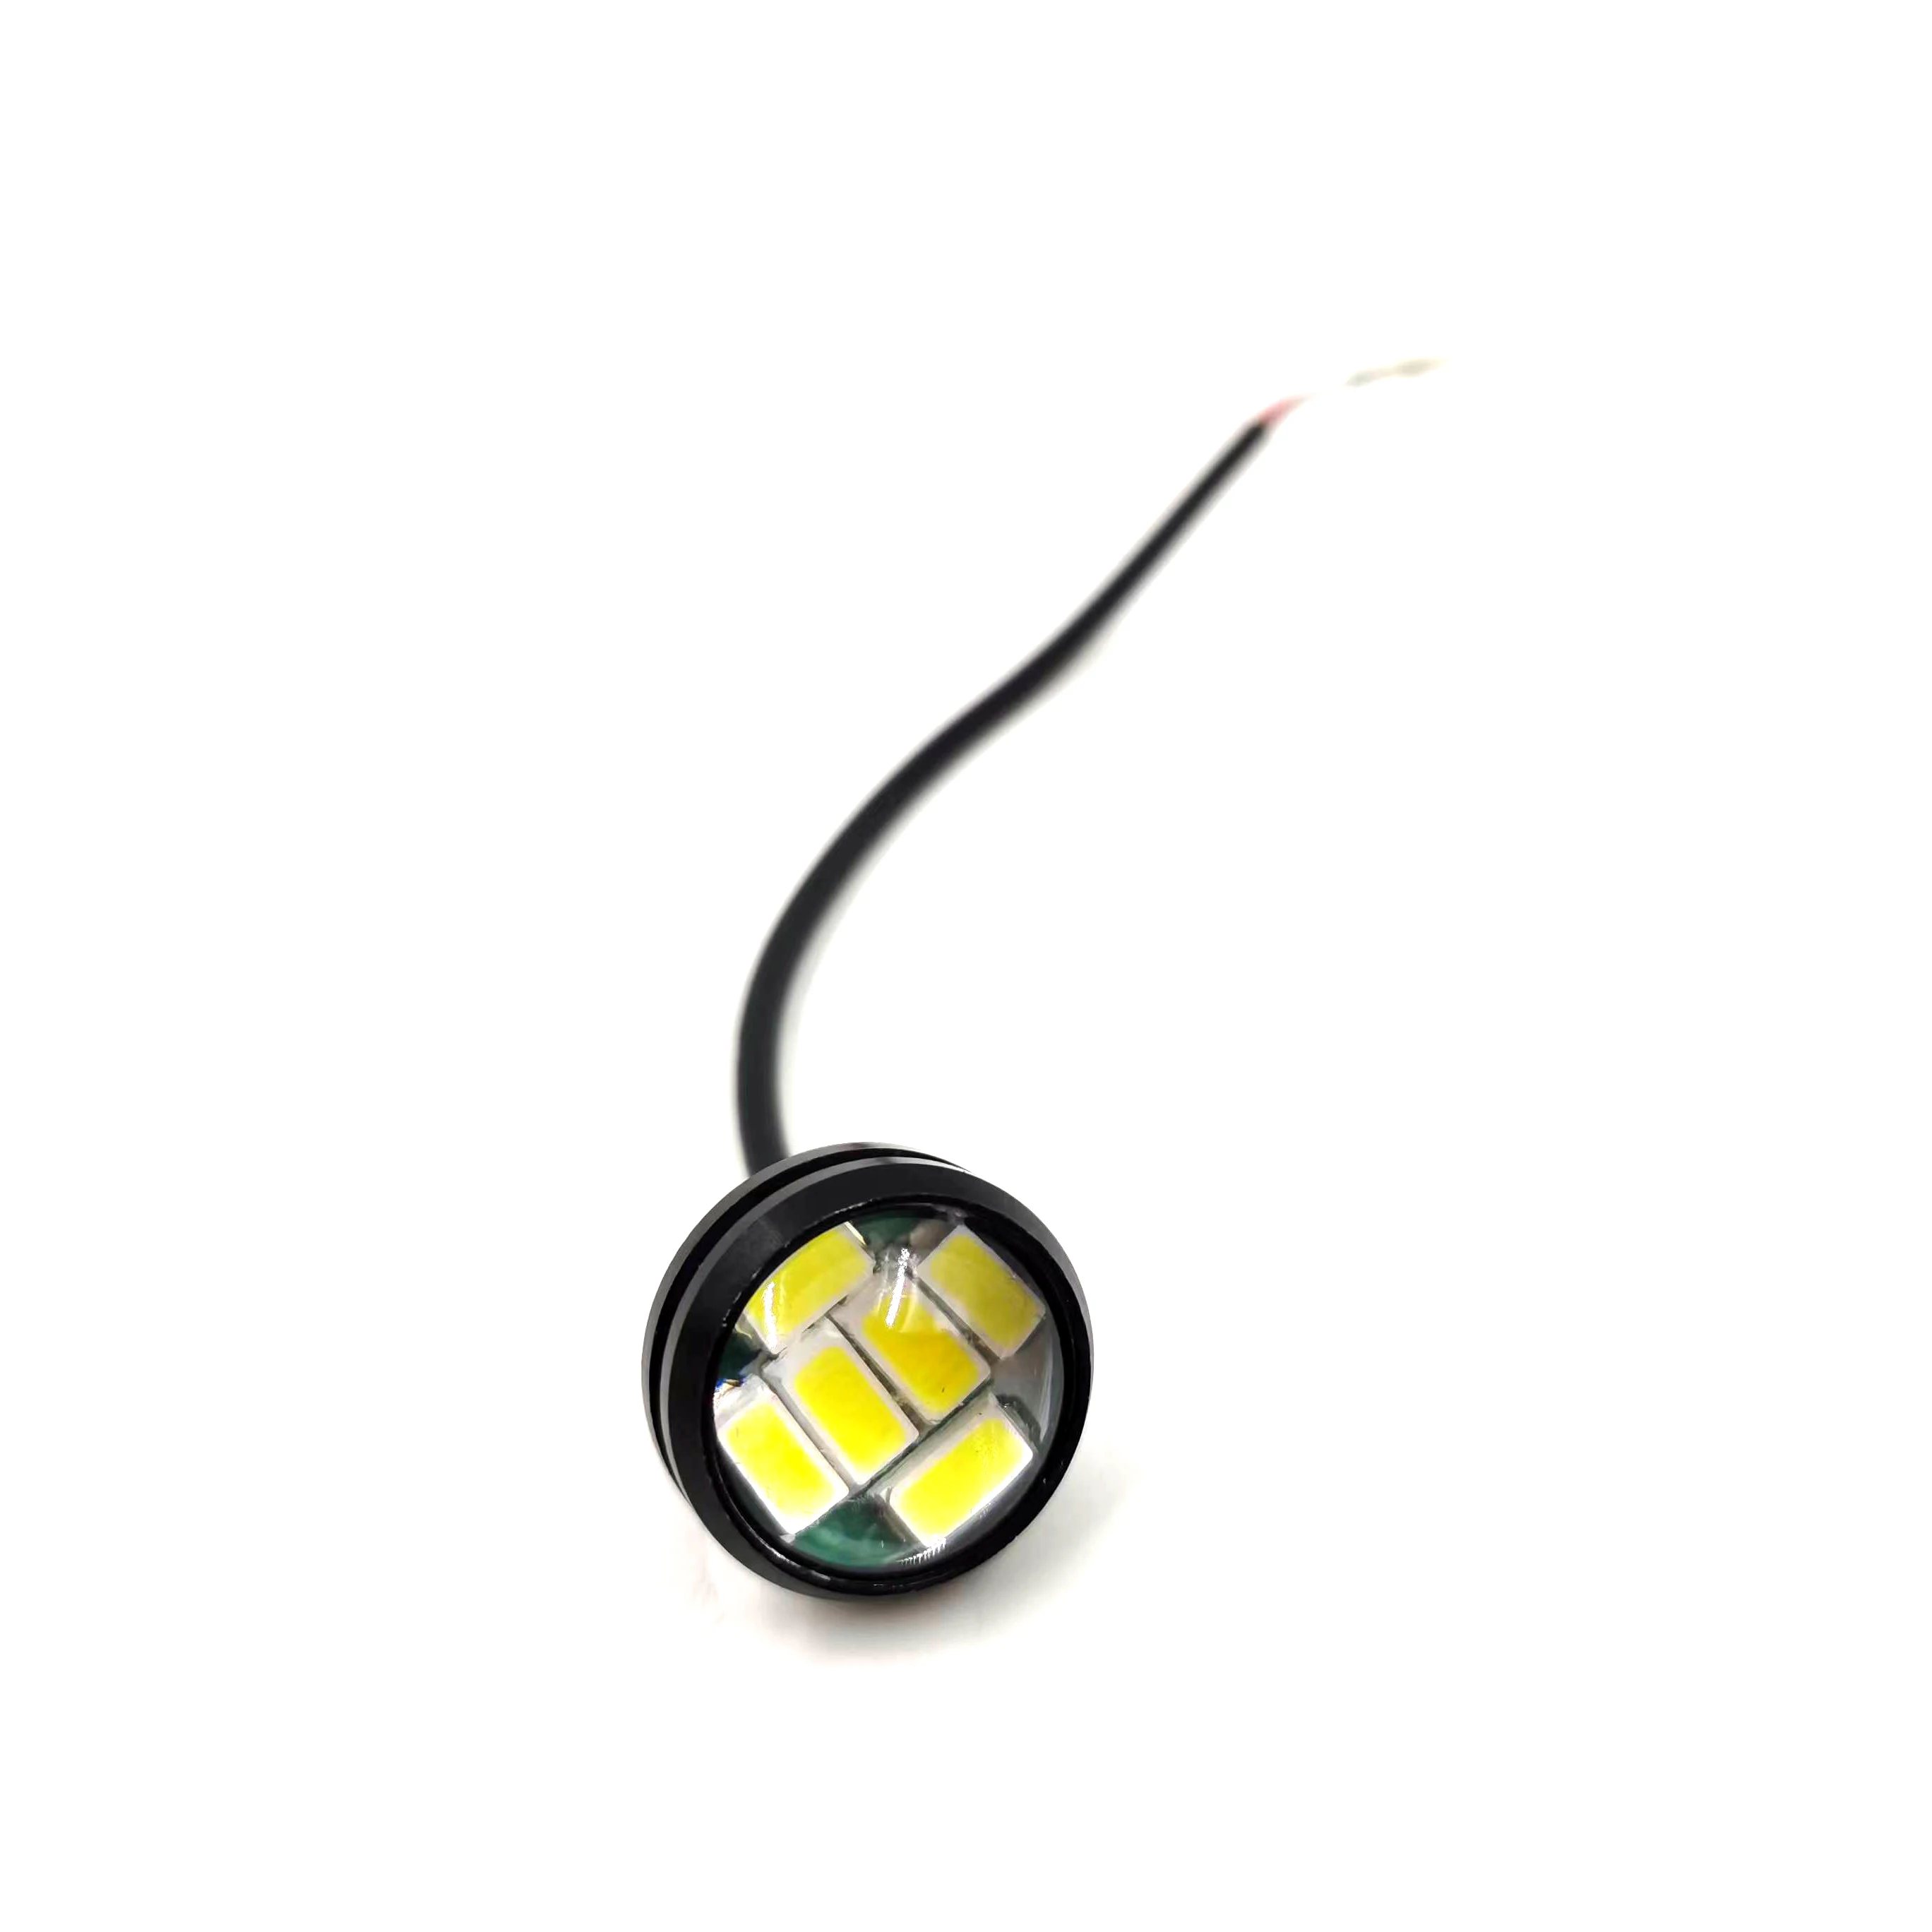 Оригинальные Детали Dualtron Передняя Фара LDE для Мини-Электрического Скутера Dualtron LED Light Аксессуары Для Фар